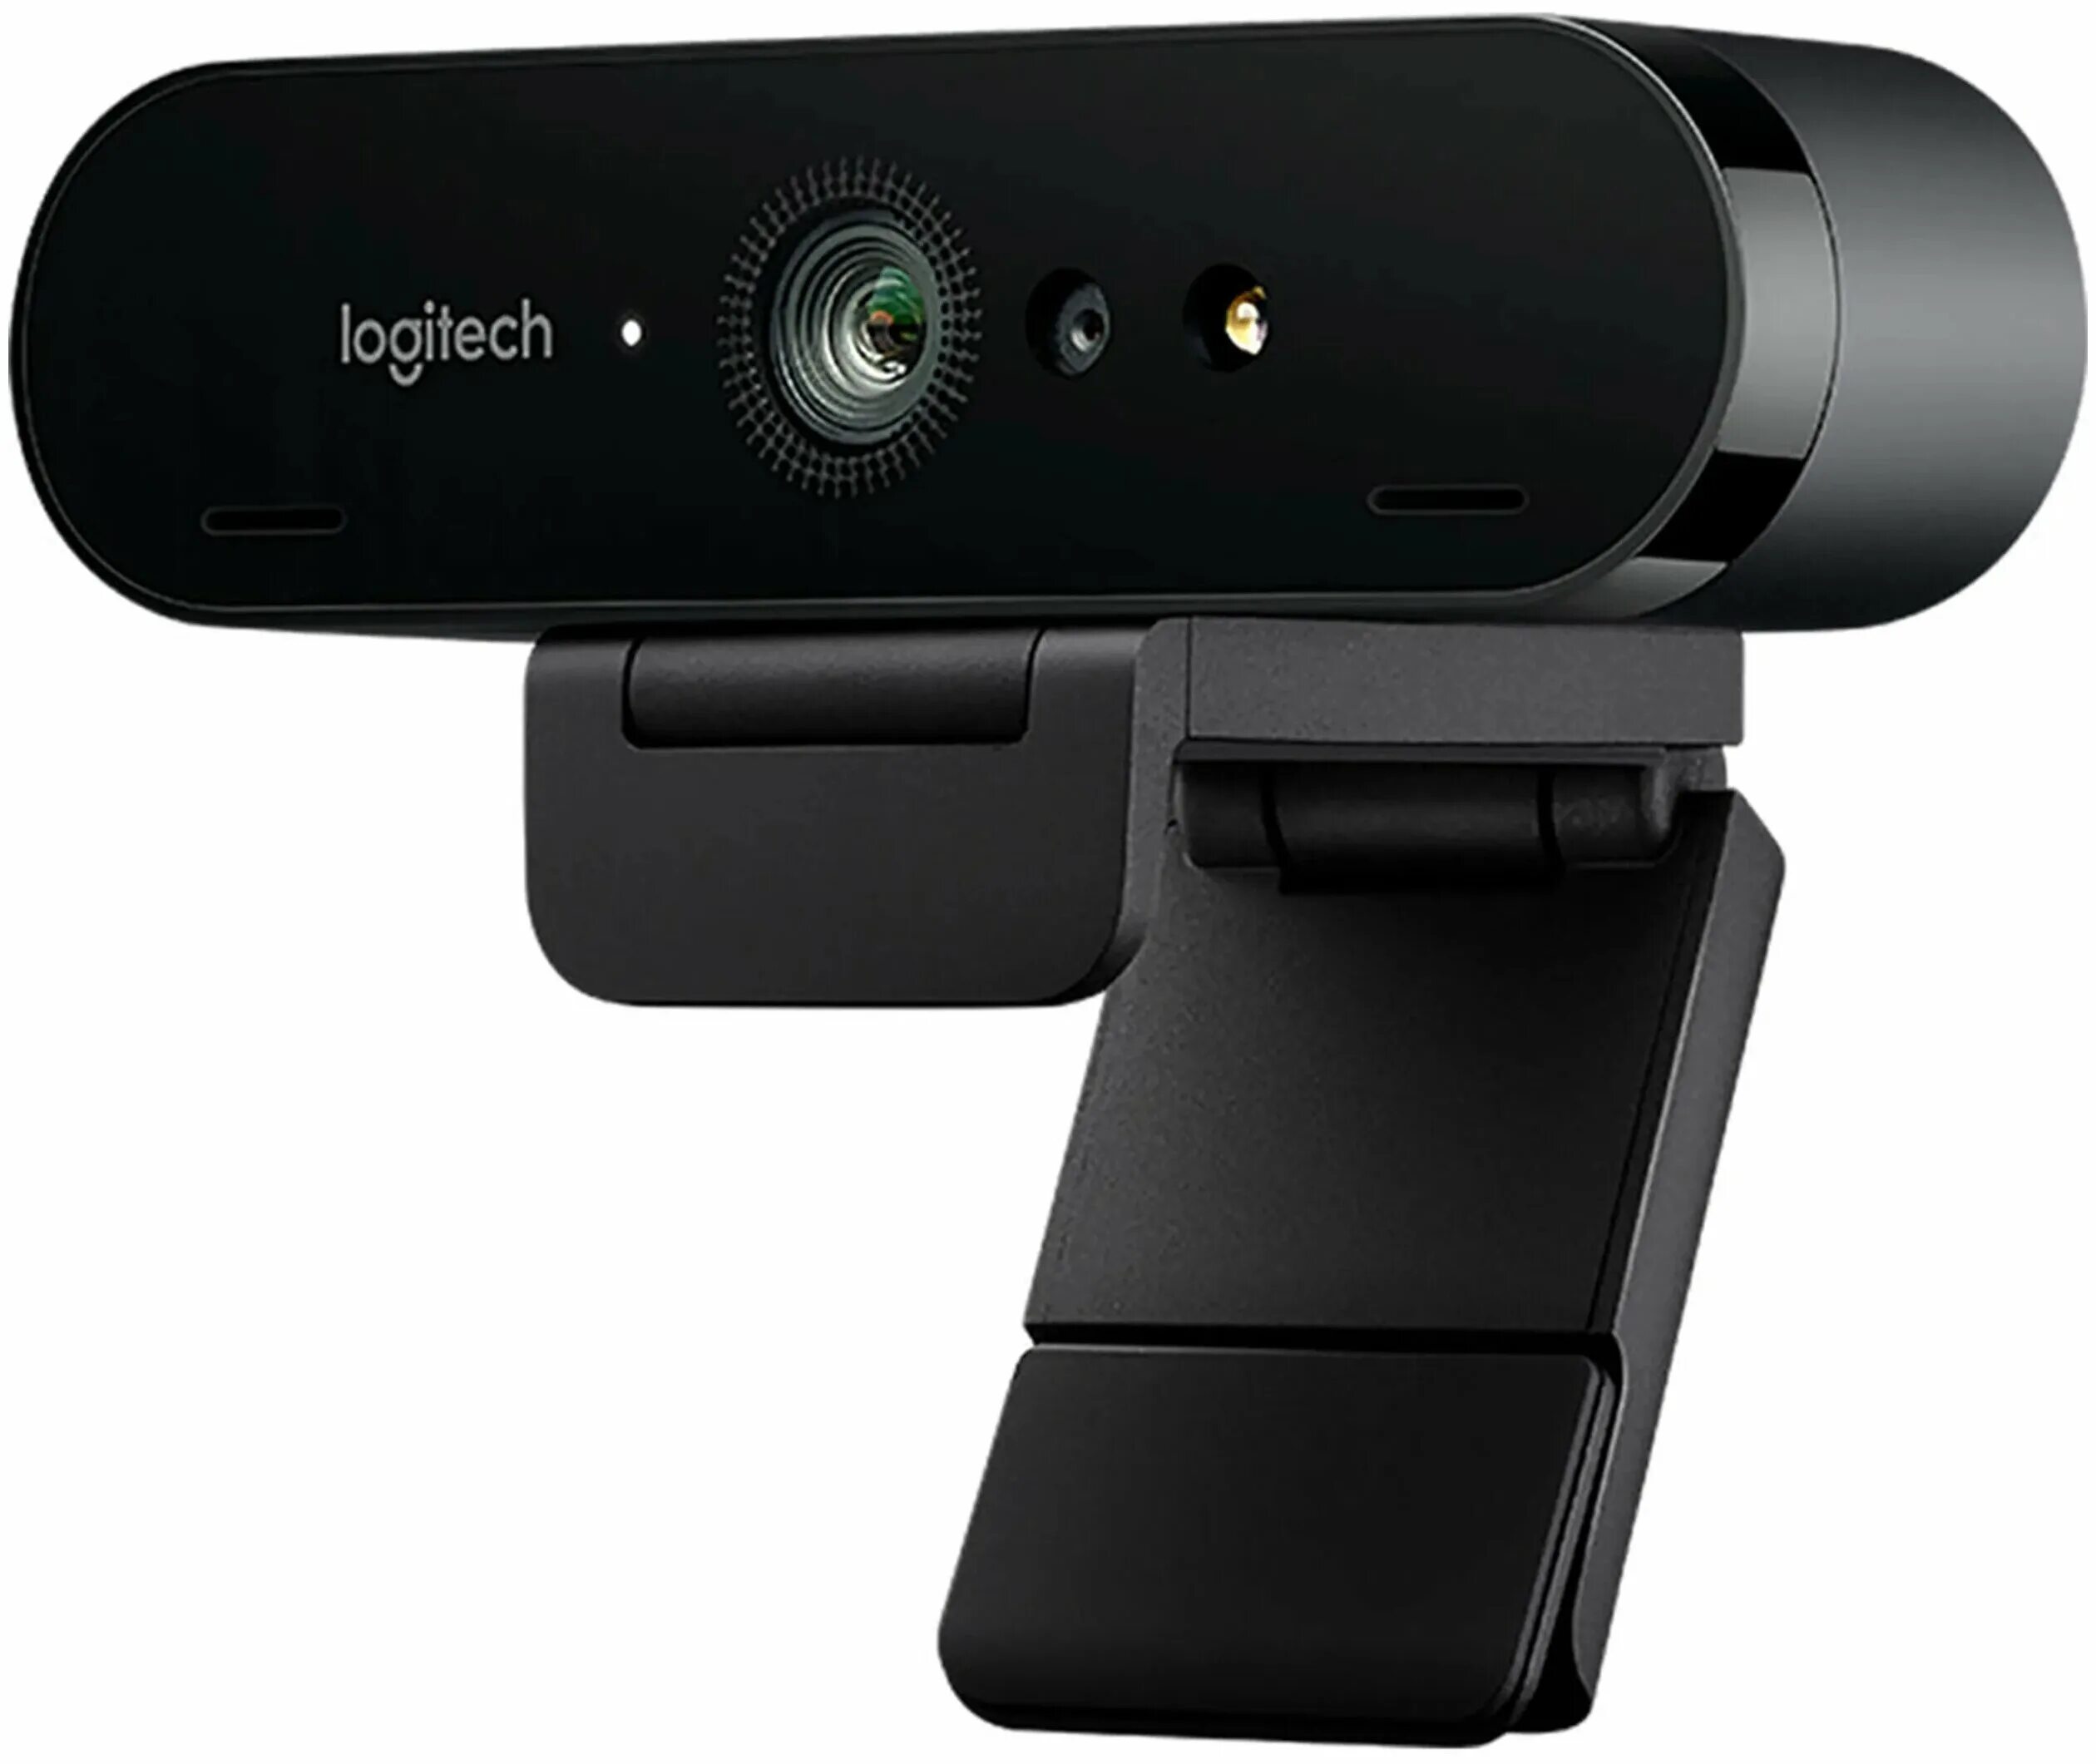 Web-камера Logitech Brio Black (960-001106). Купить камеру логитек